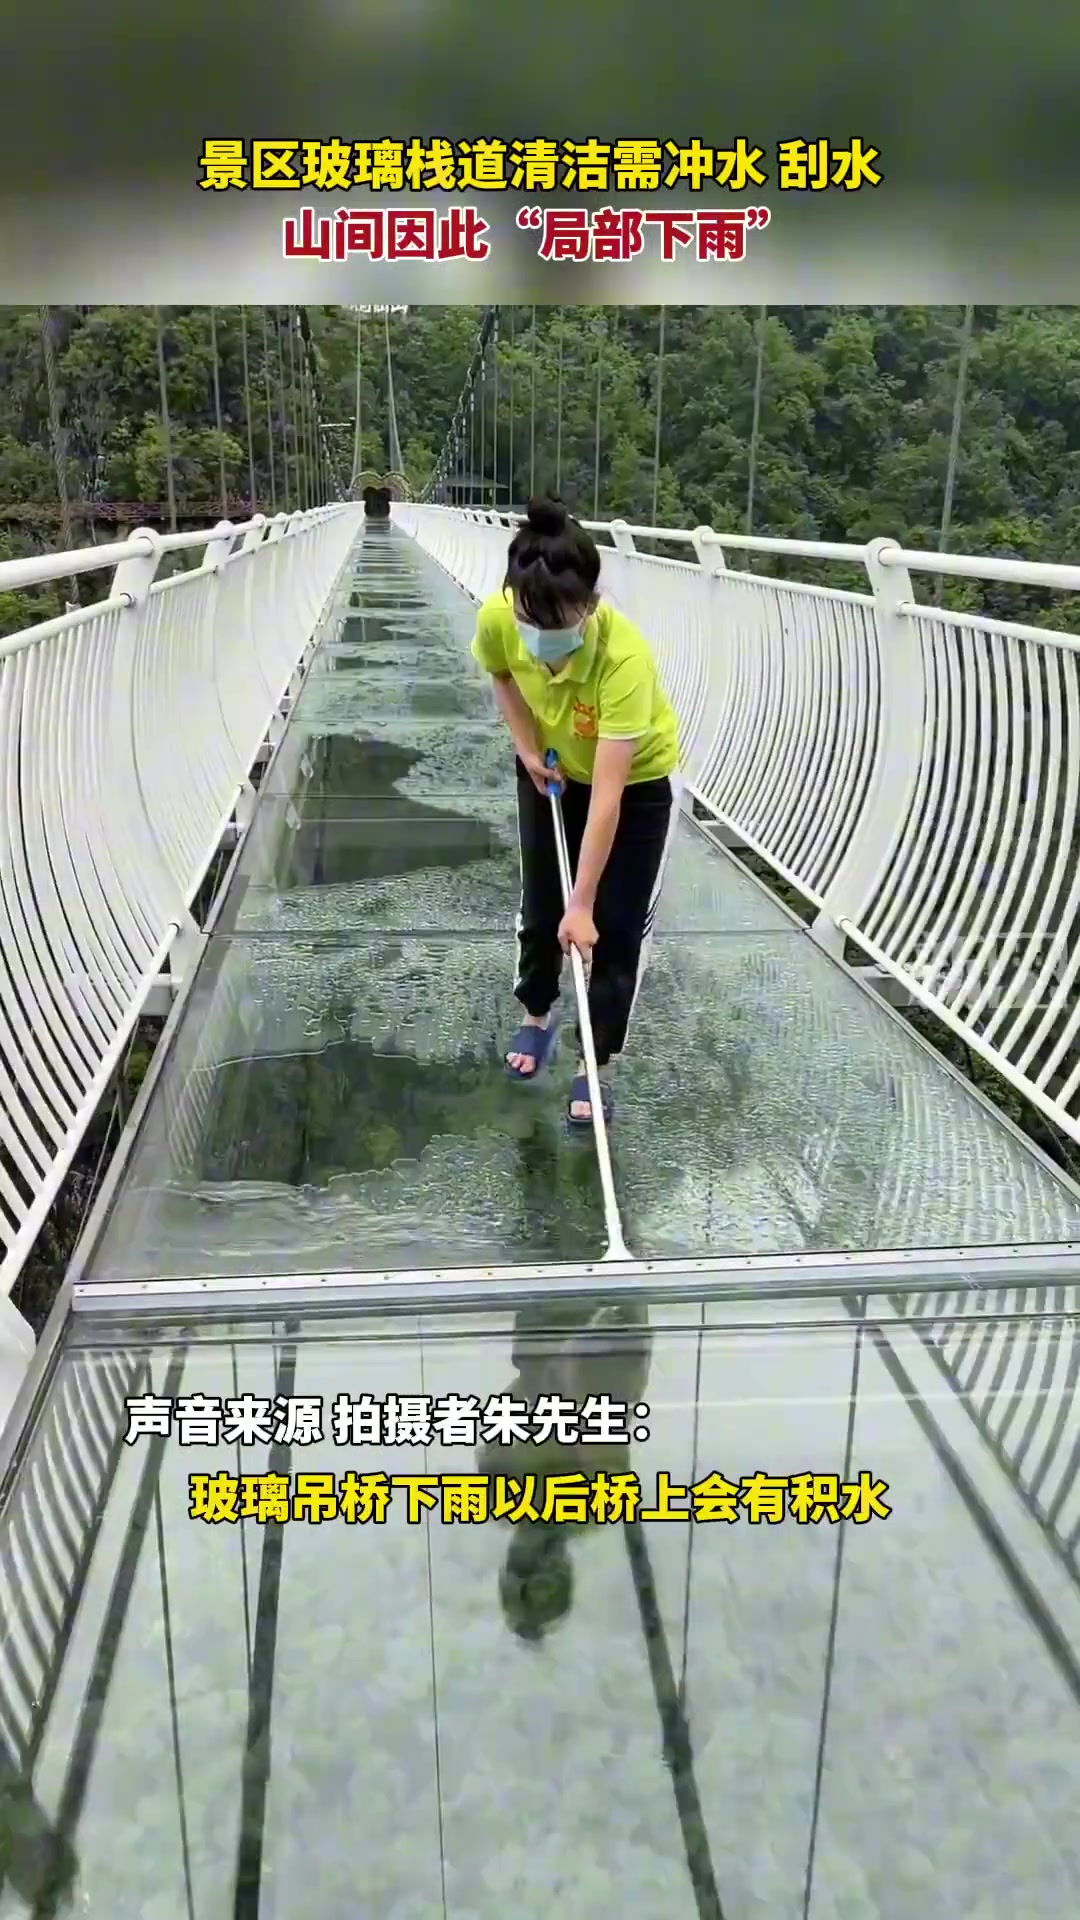 广西河池景区玻璃栈道清洁 工作人员冲水又刮水